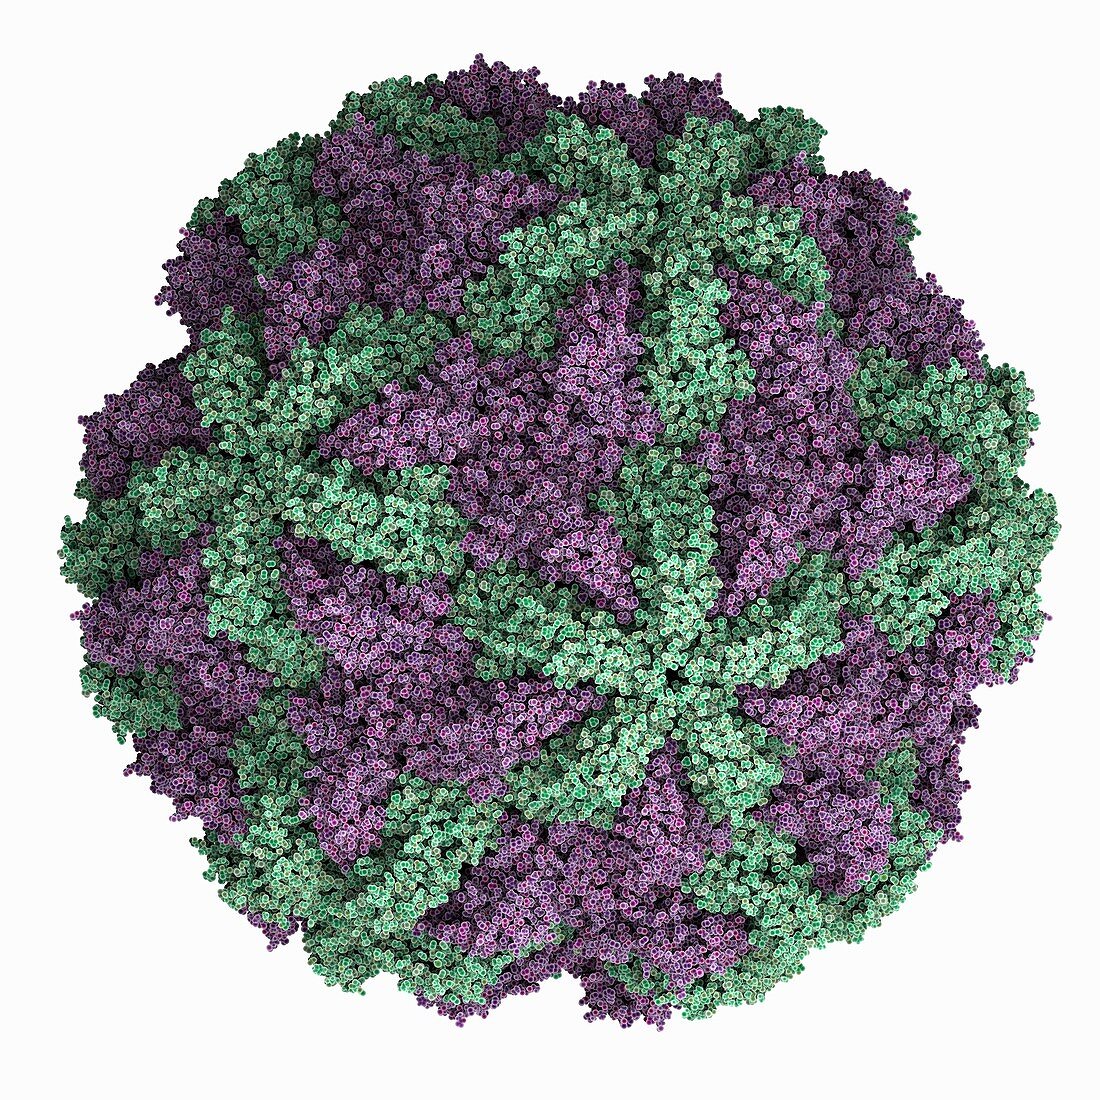 Trichomonas vaginalis virus 2 capsid, molecular model